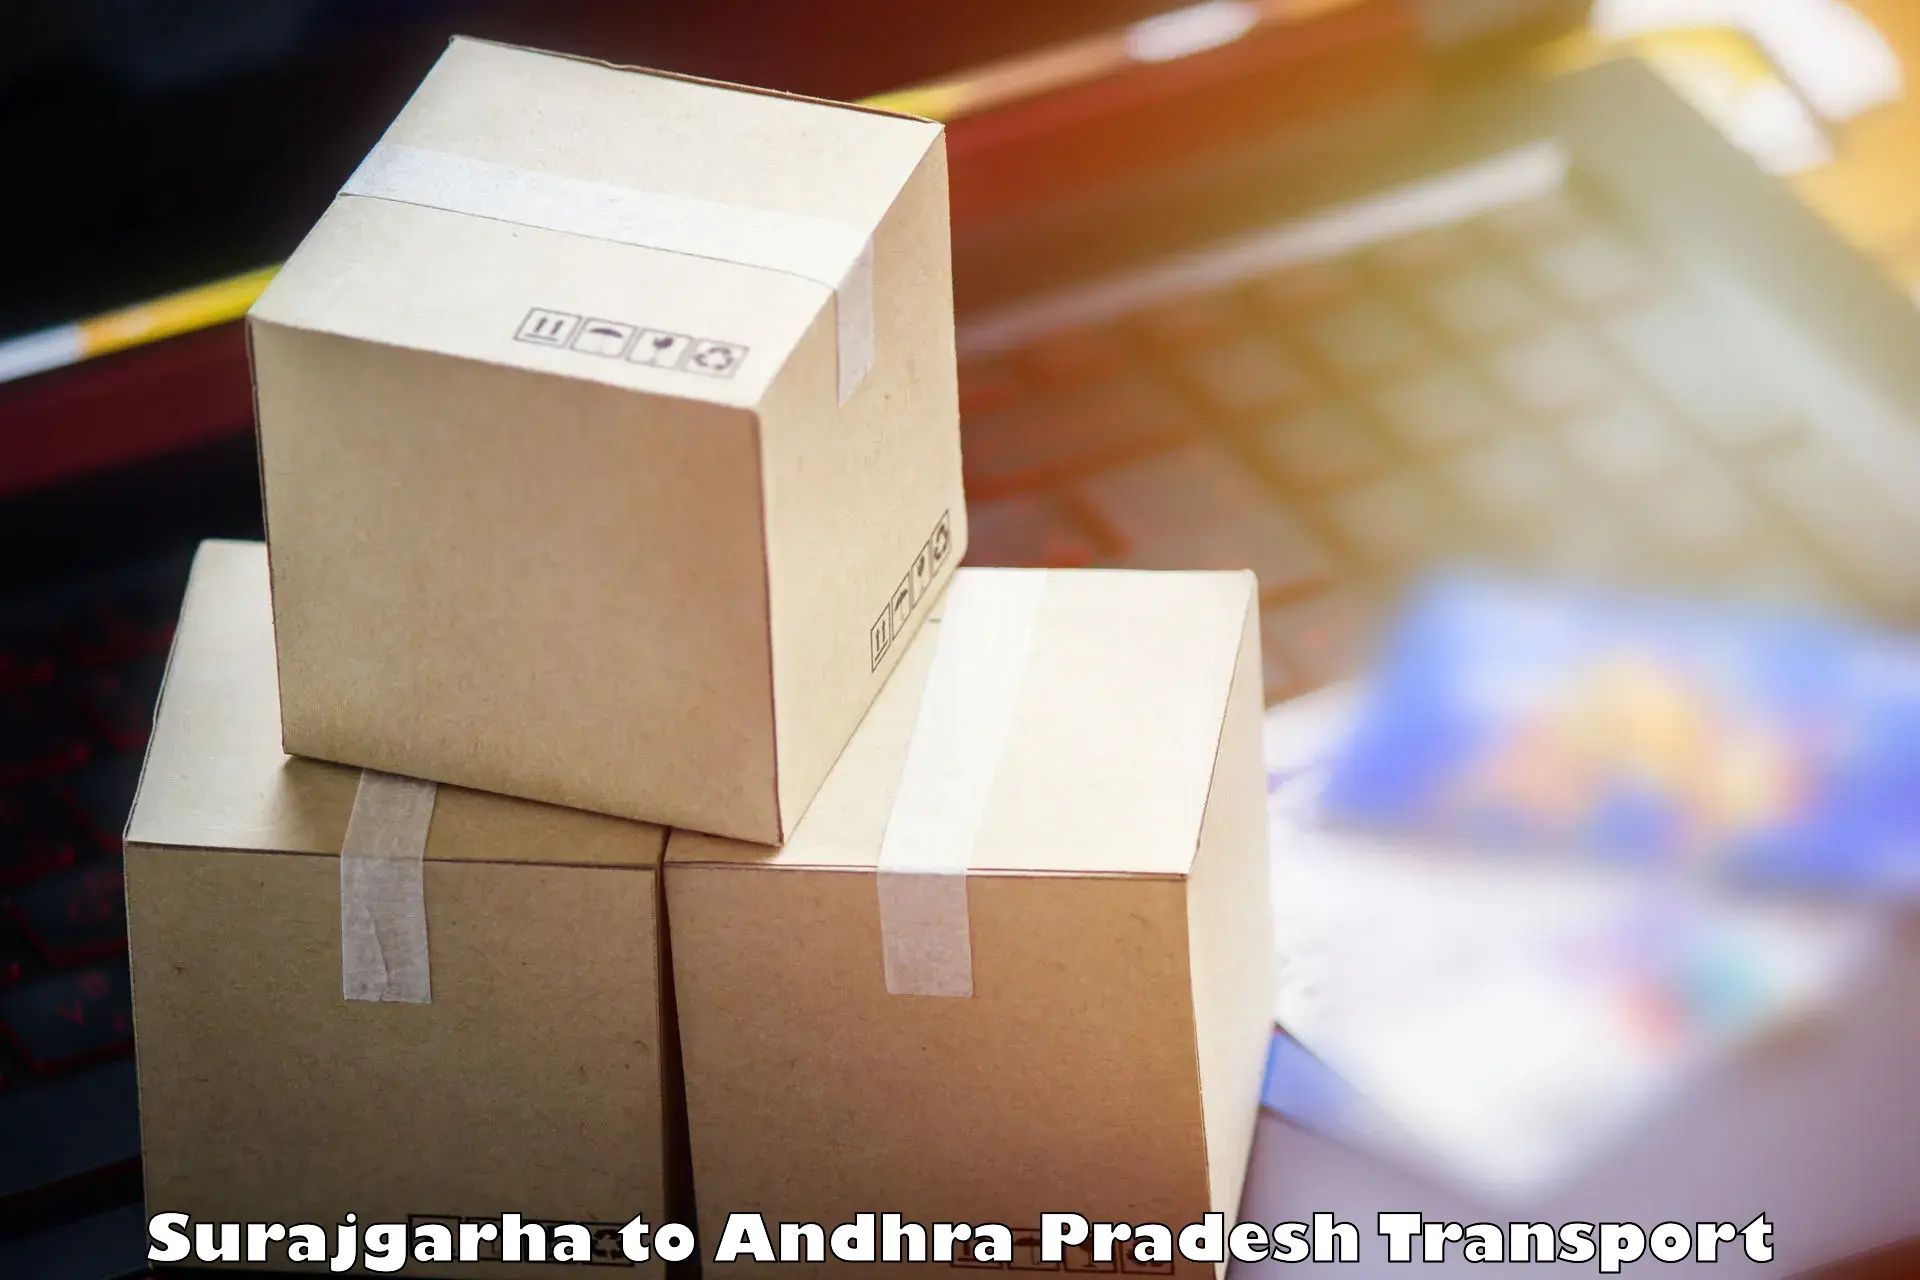 Daily parcel service transport Surajgarha to Dwaraka Tirumala